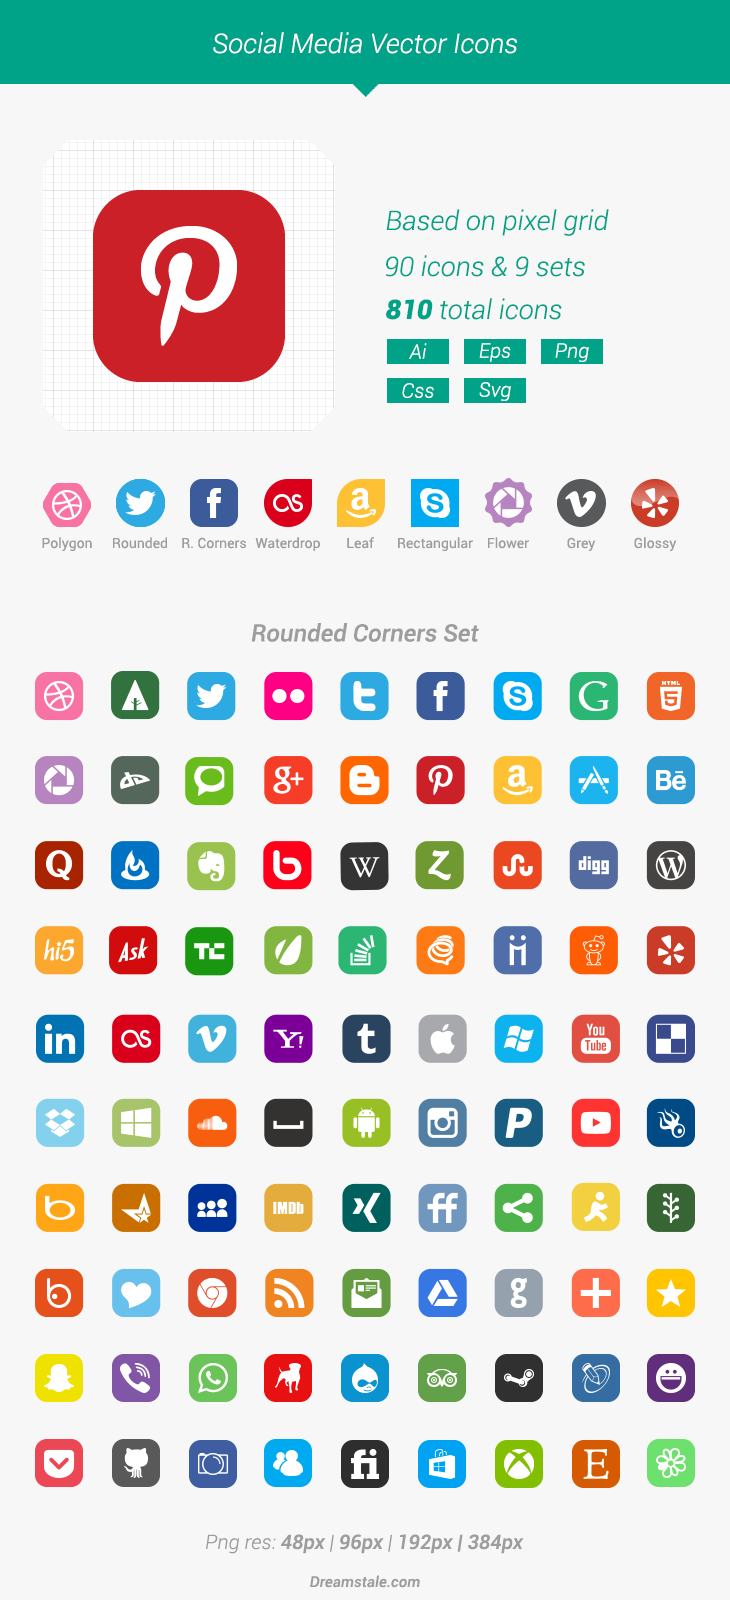 Free Download 90 Vector Social Media Icons Dreamstale